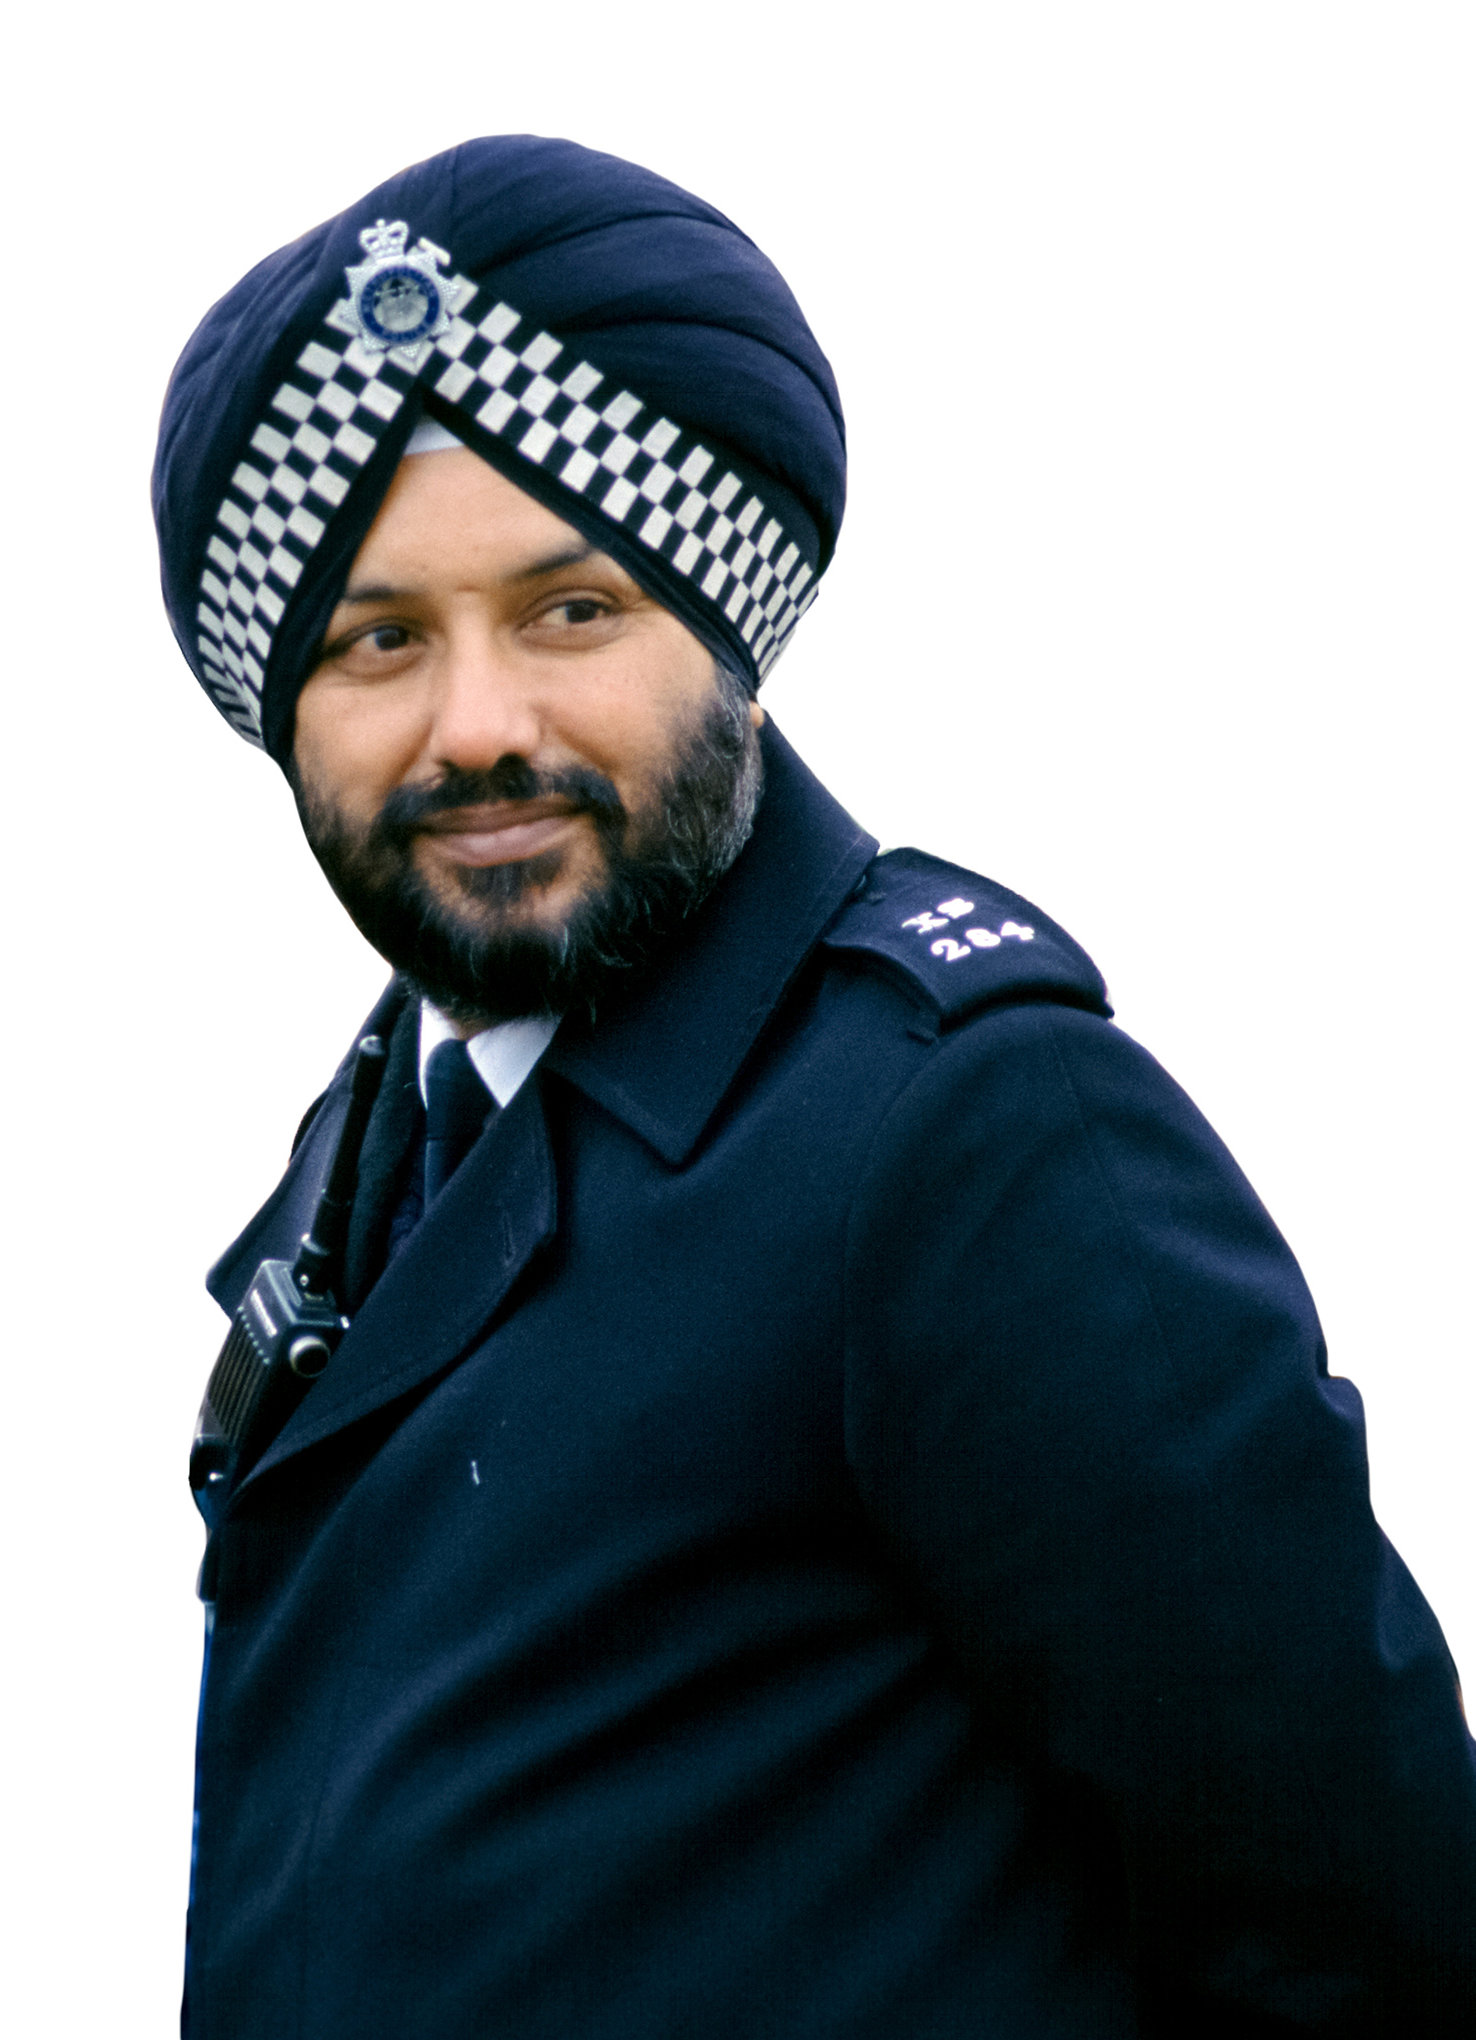 Sikh police officer